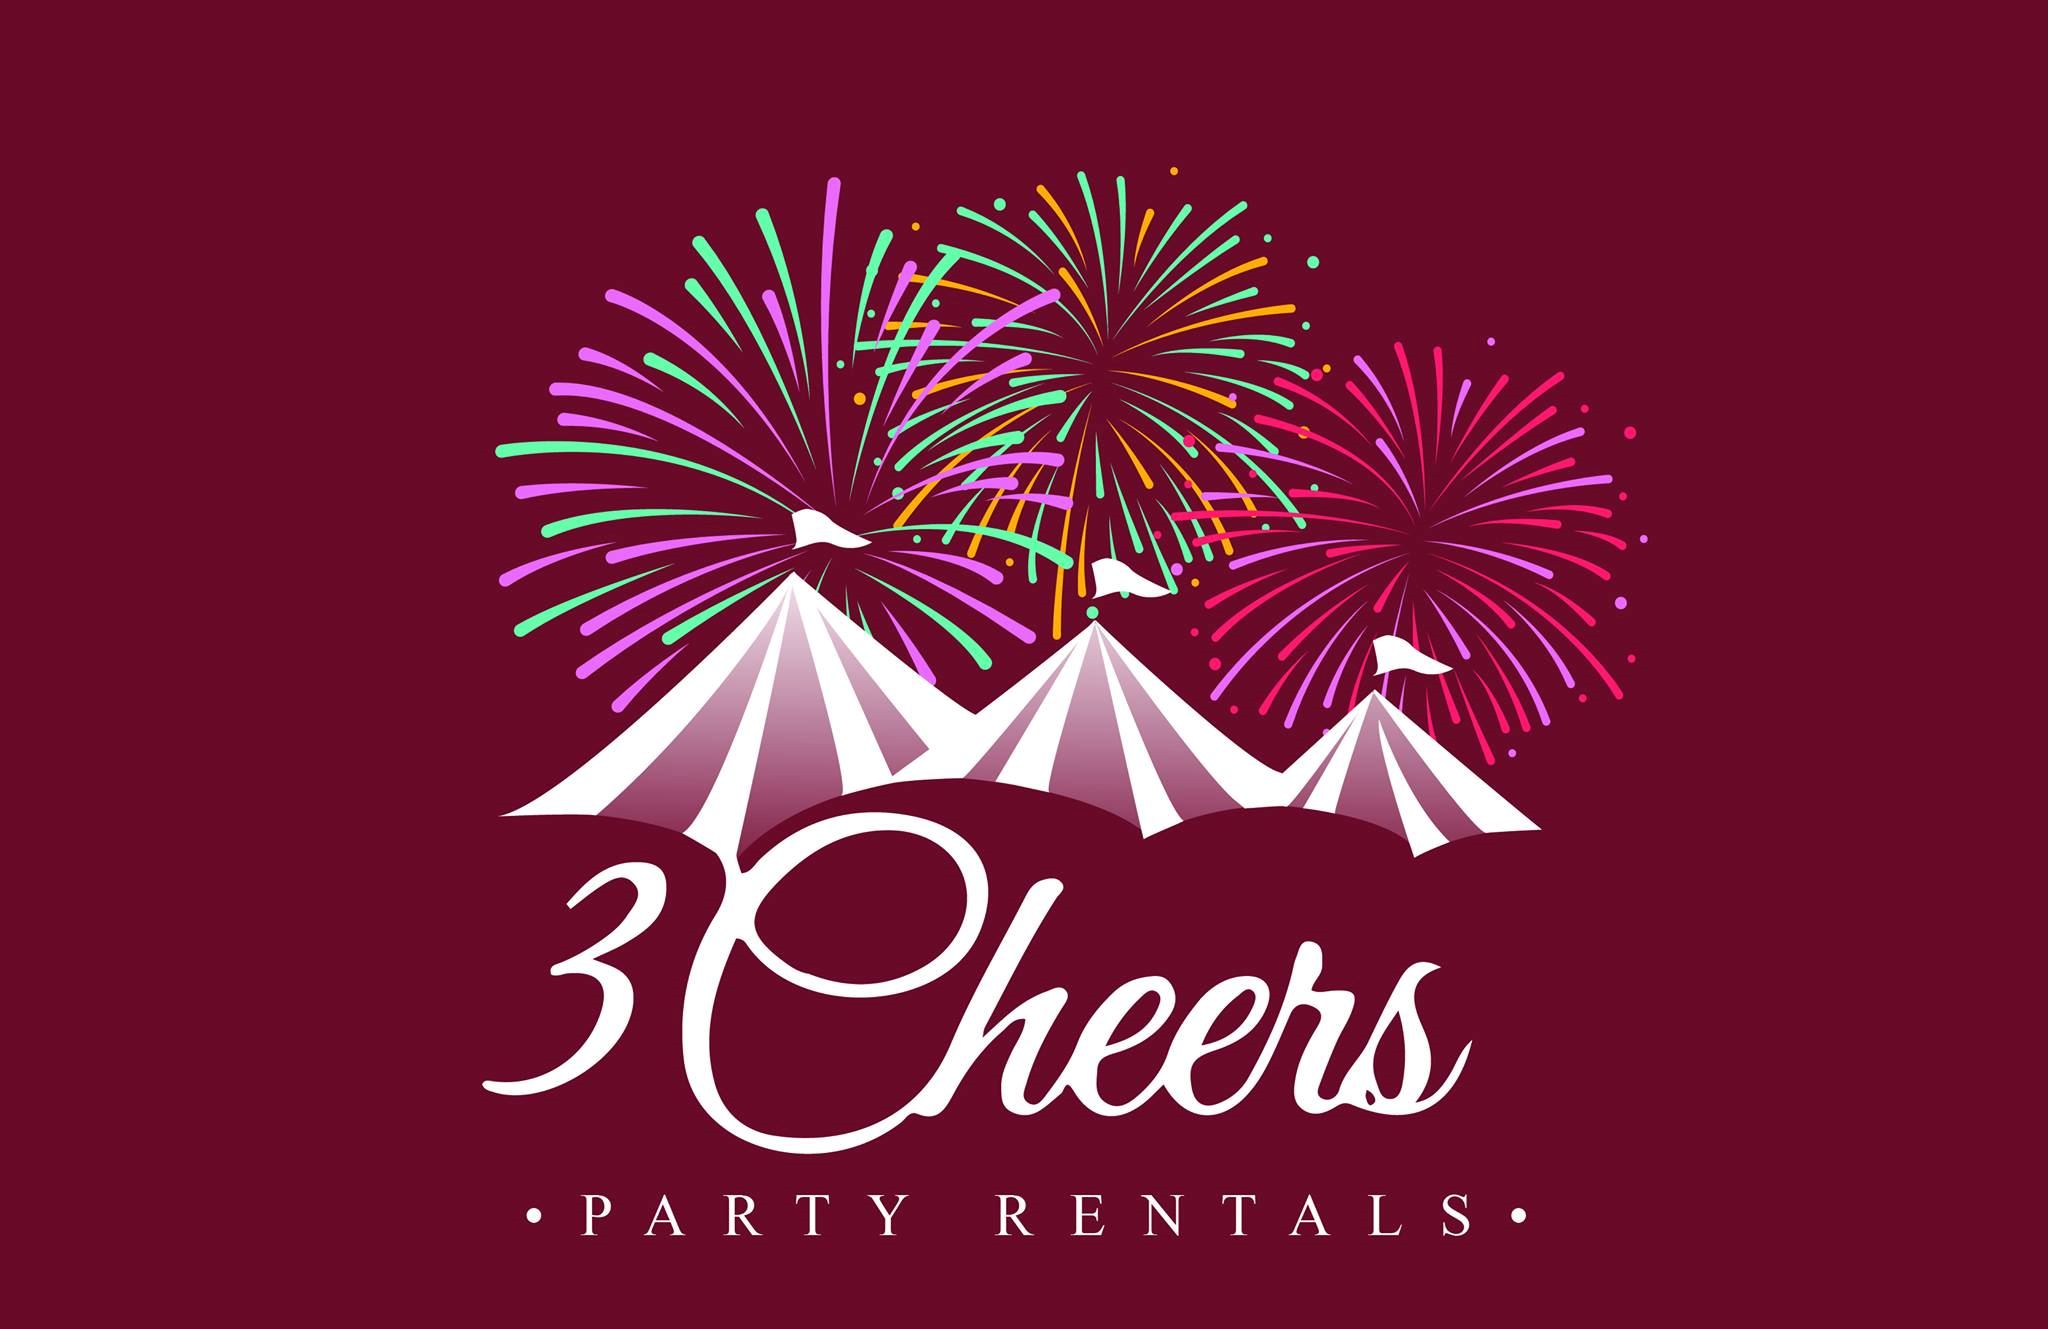 3 Cheers Party Rentals - 1